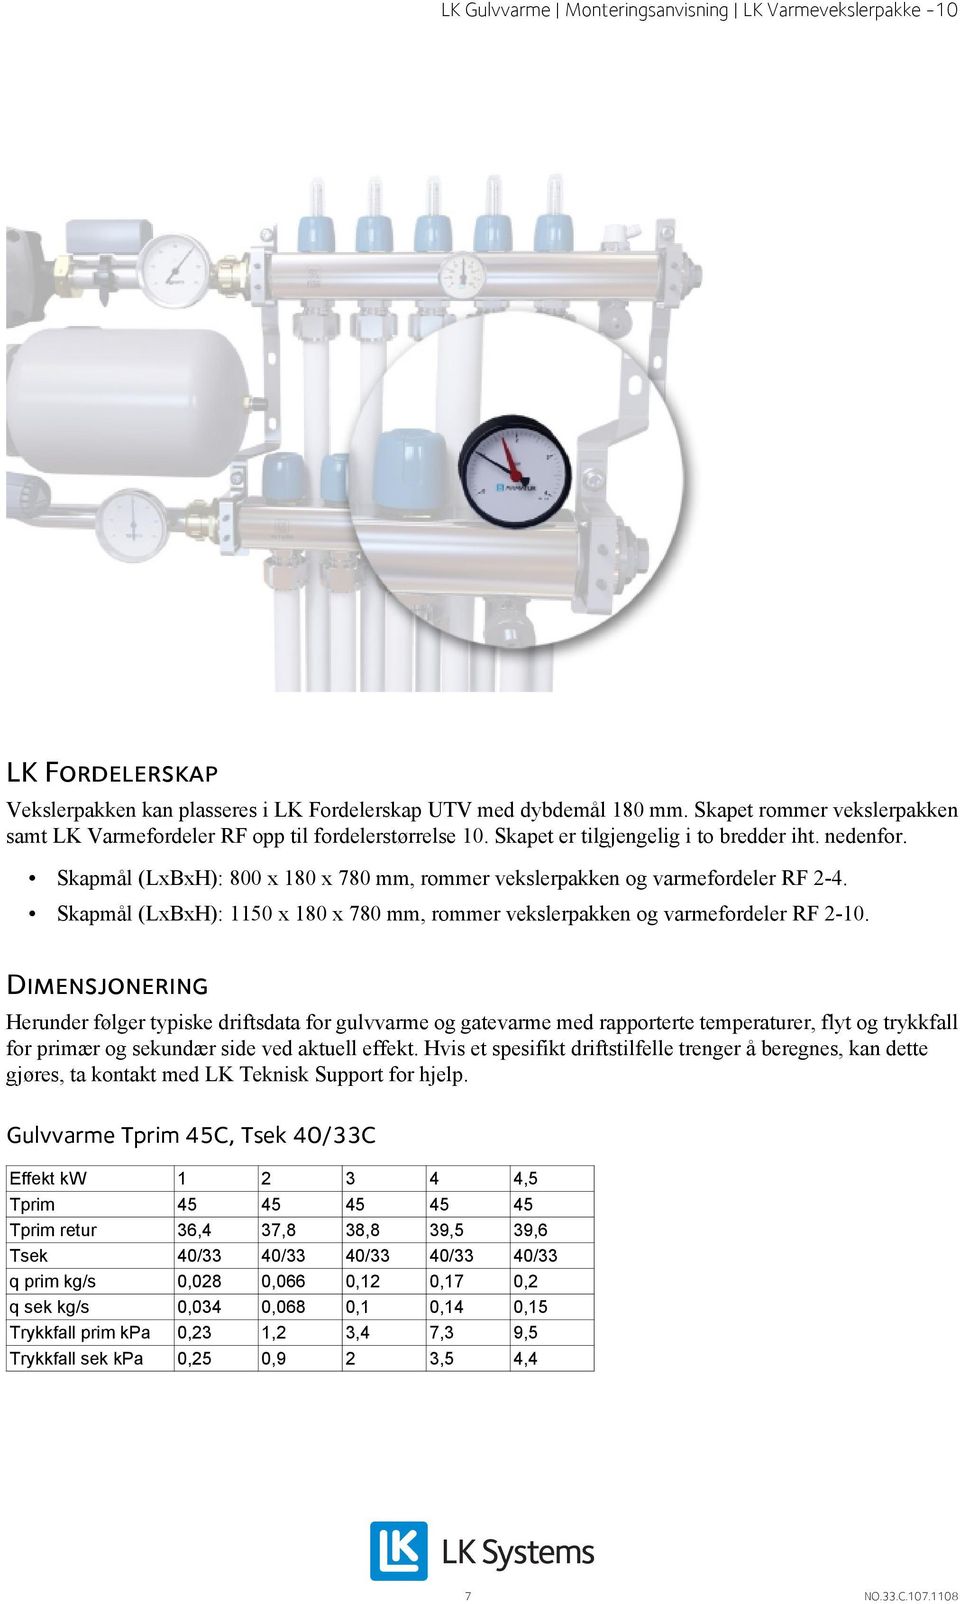 Skapmål (LxBxH): 1150 x 180 x 780 mm, rommer vekslerpakken og varmefordeler RF 2-10.